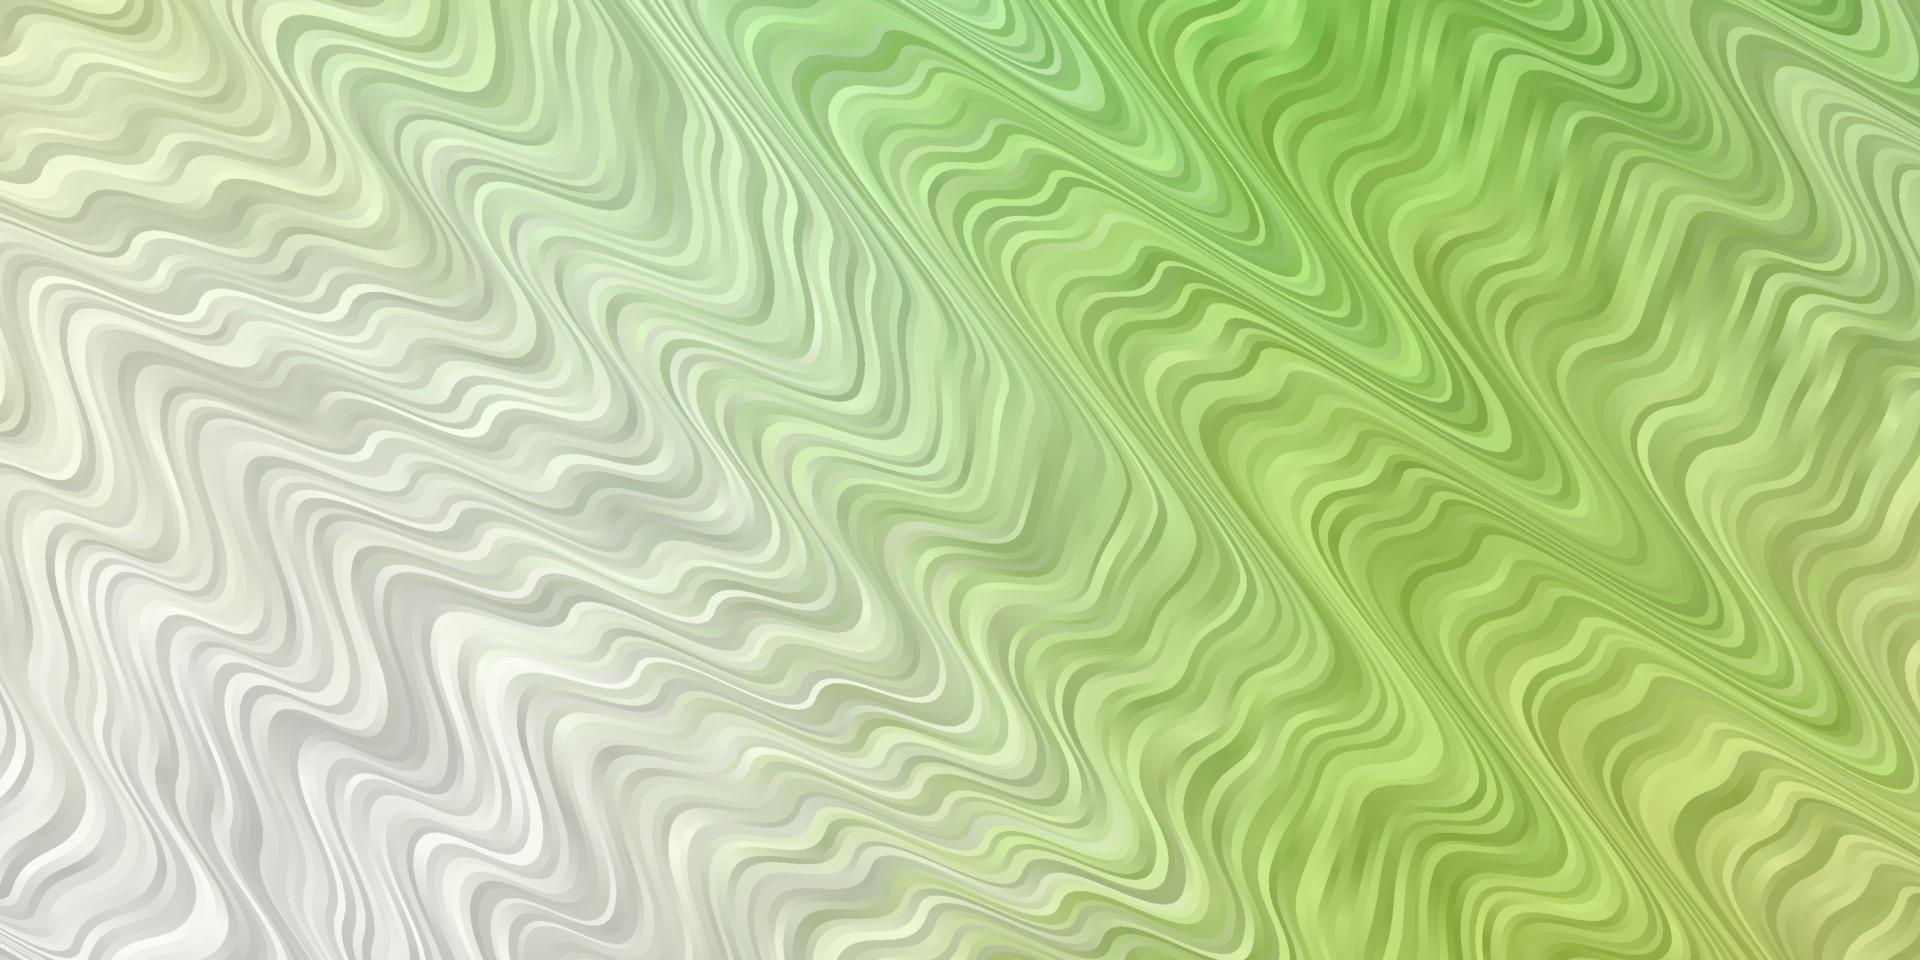 hellgrüner Vektorhintergrund mit gebogenen Linien. vektor